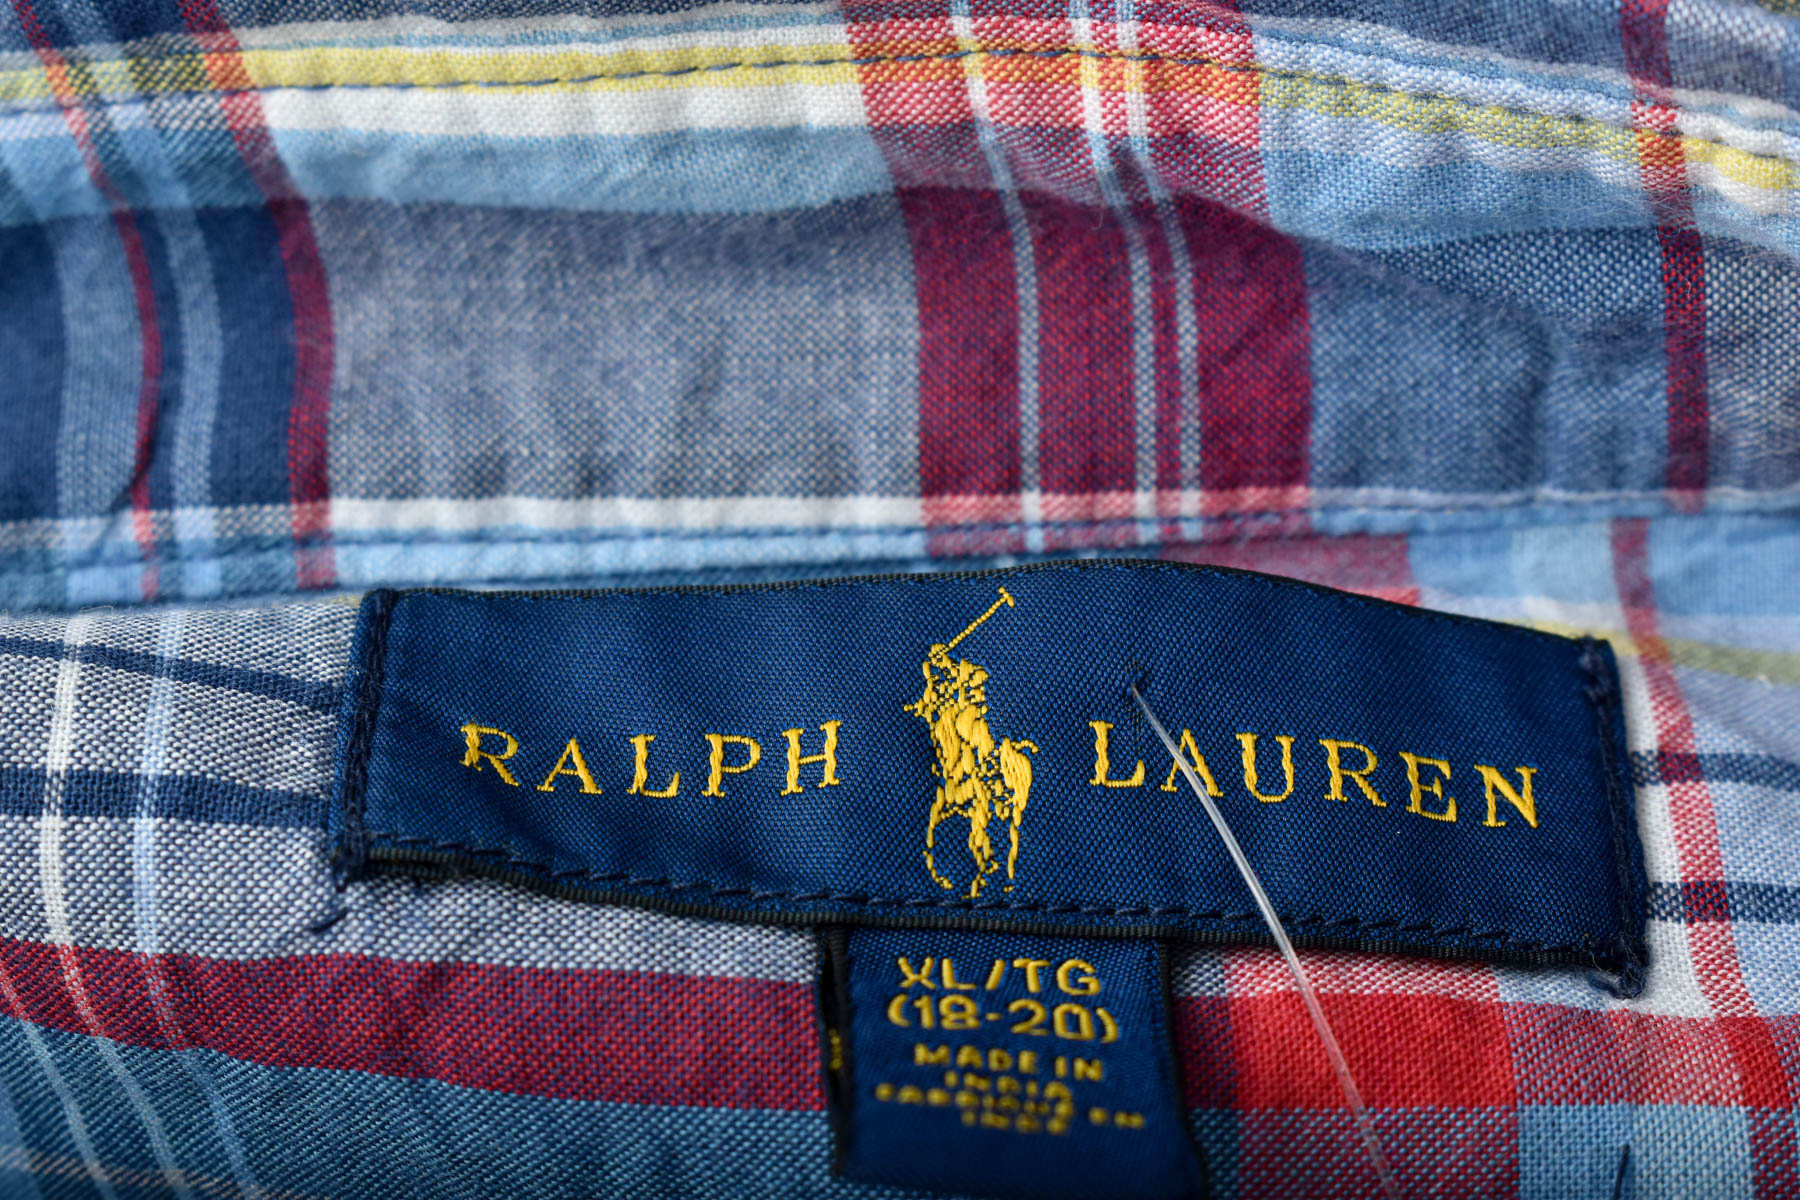 Boys' shirt - Ralph Lauren - 2